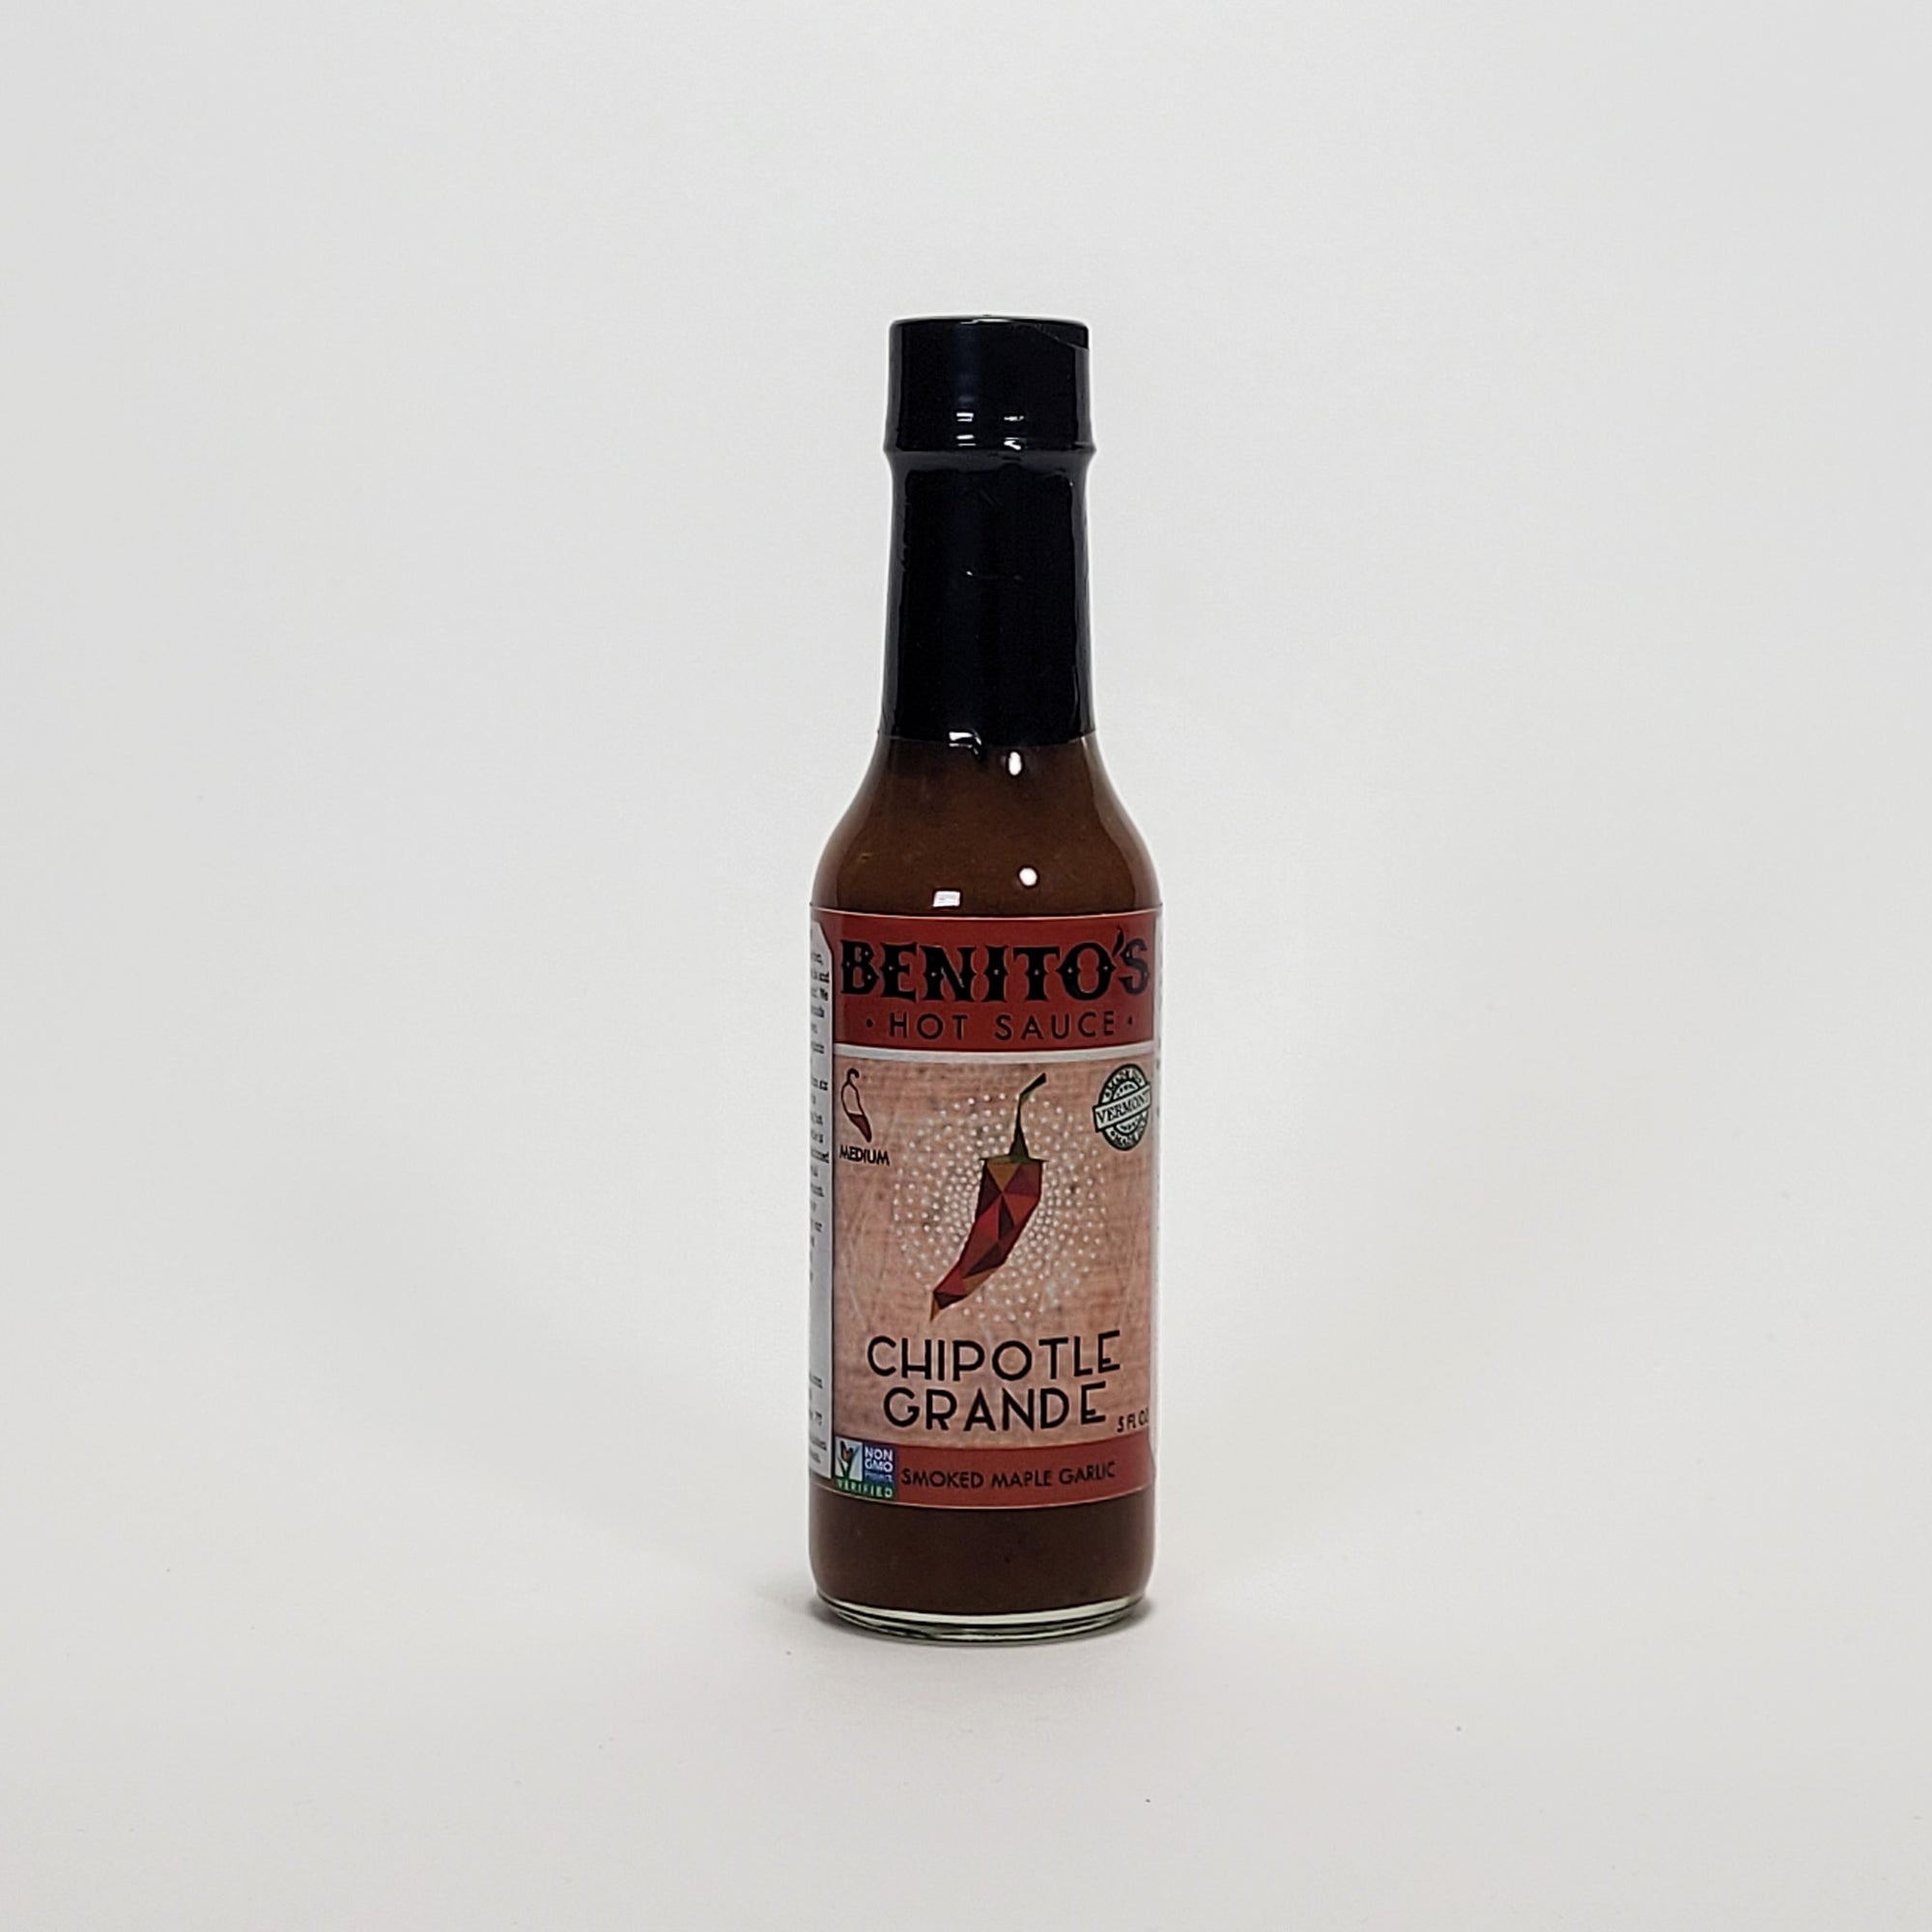 Benito's Chipotle Grande hot sauce